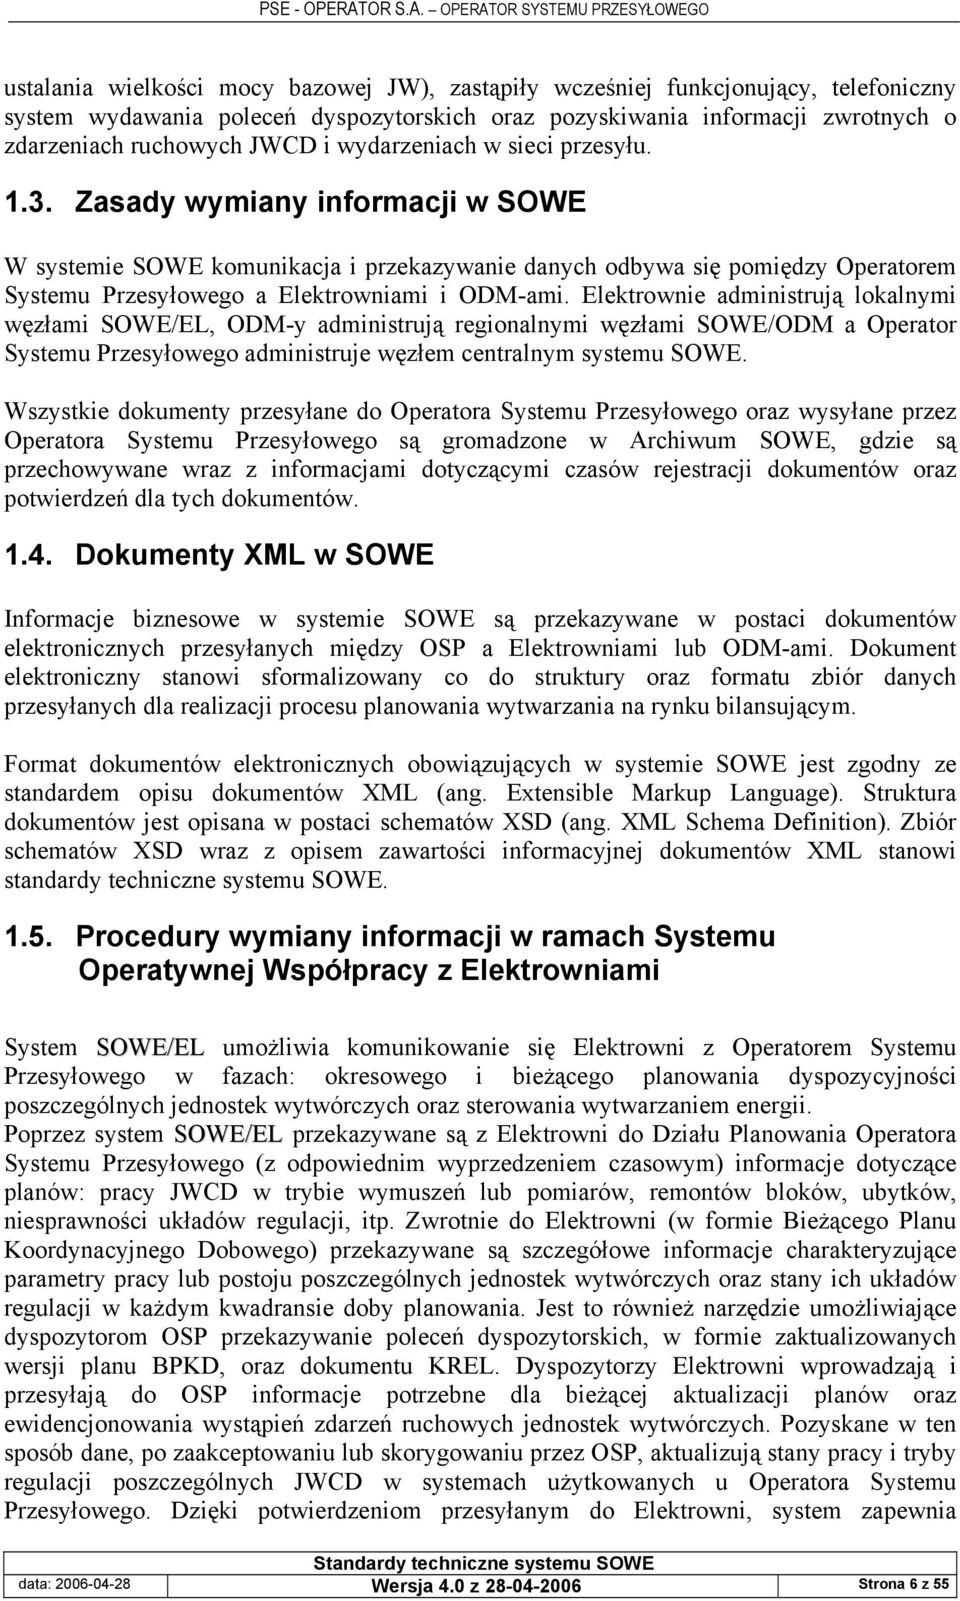 Elektrownie administrują lokalnymi węzłami SOWE/EL, ODM-y administrują regionalnymi węzłami SOWE/ODM a Operator Systemu Przesyłowego administruje węzłem centralnym systemu SOWE.